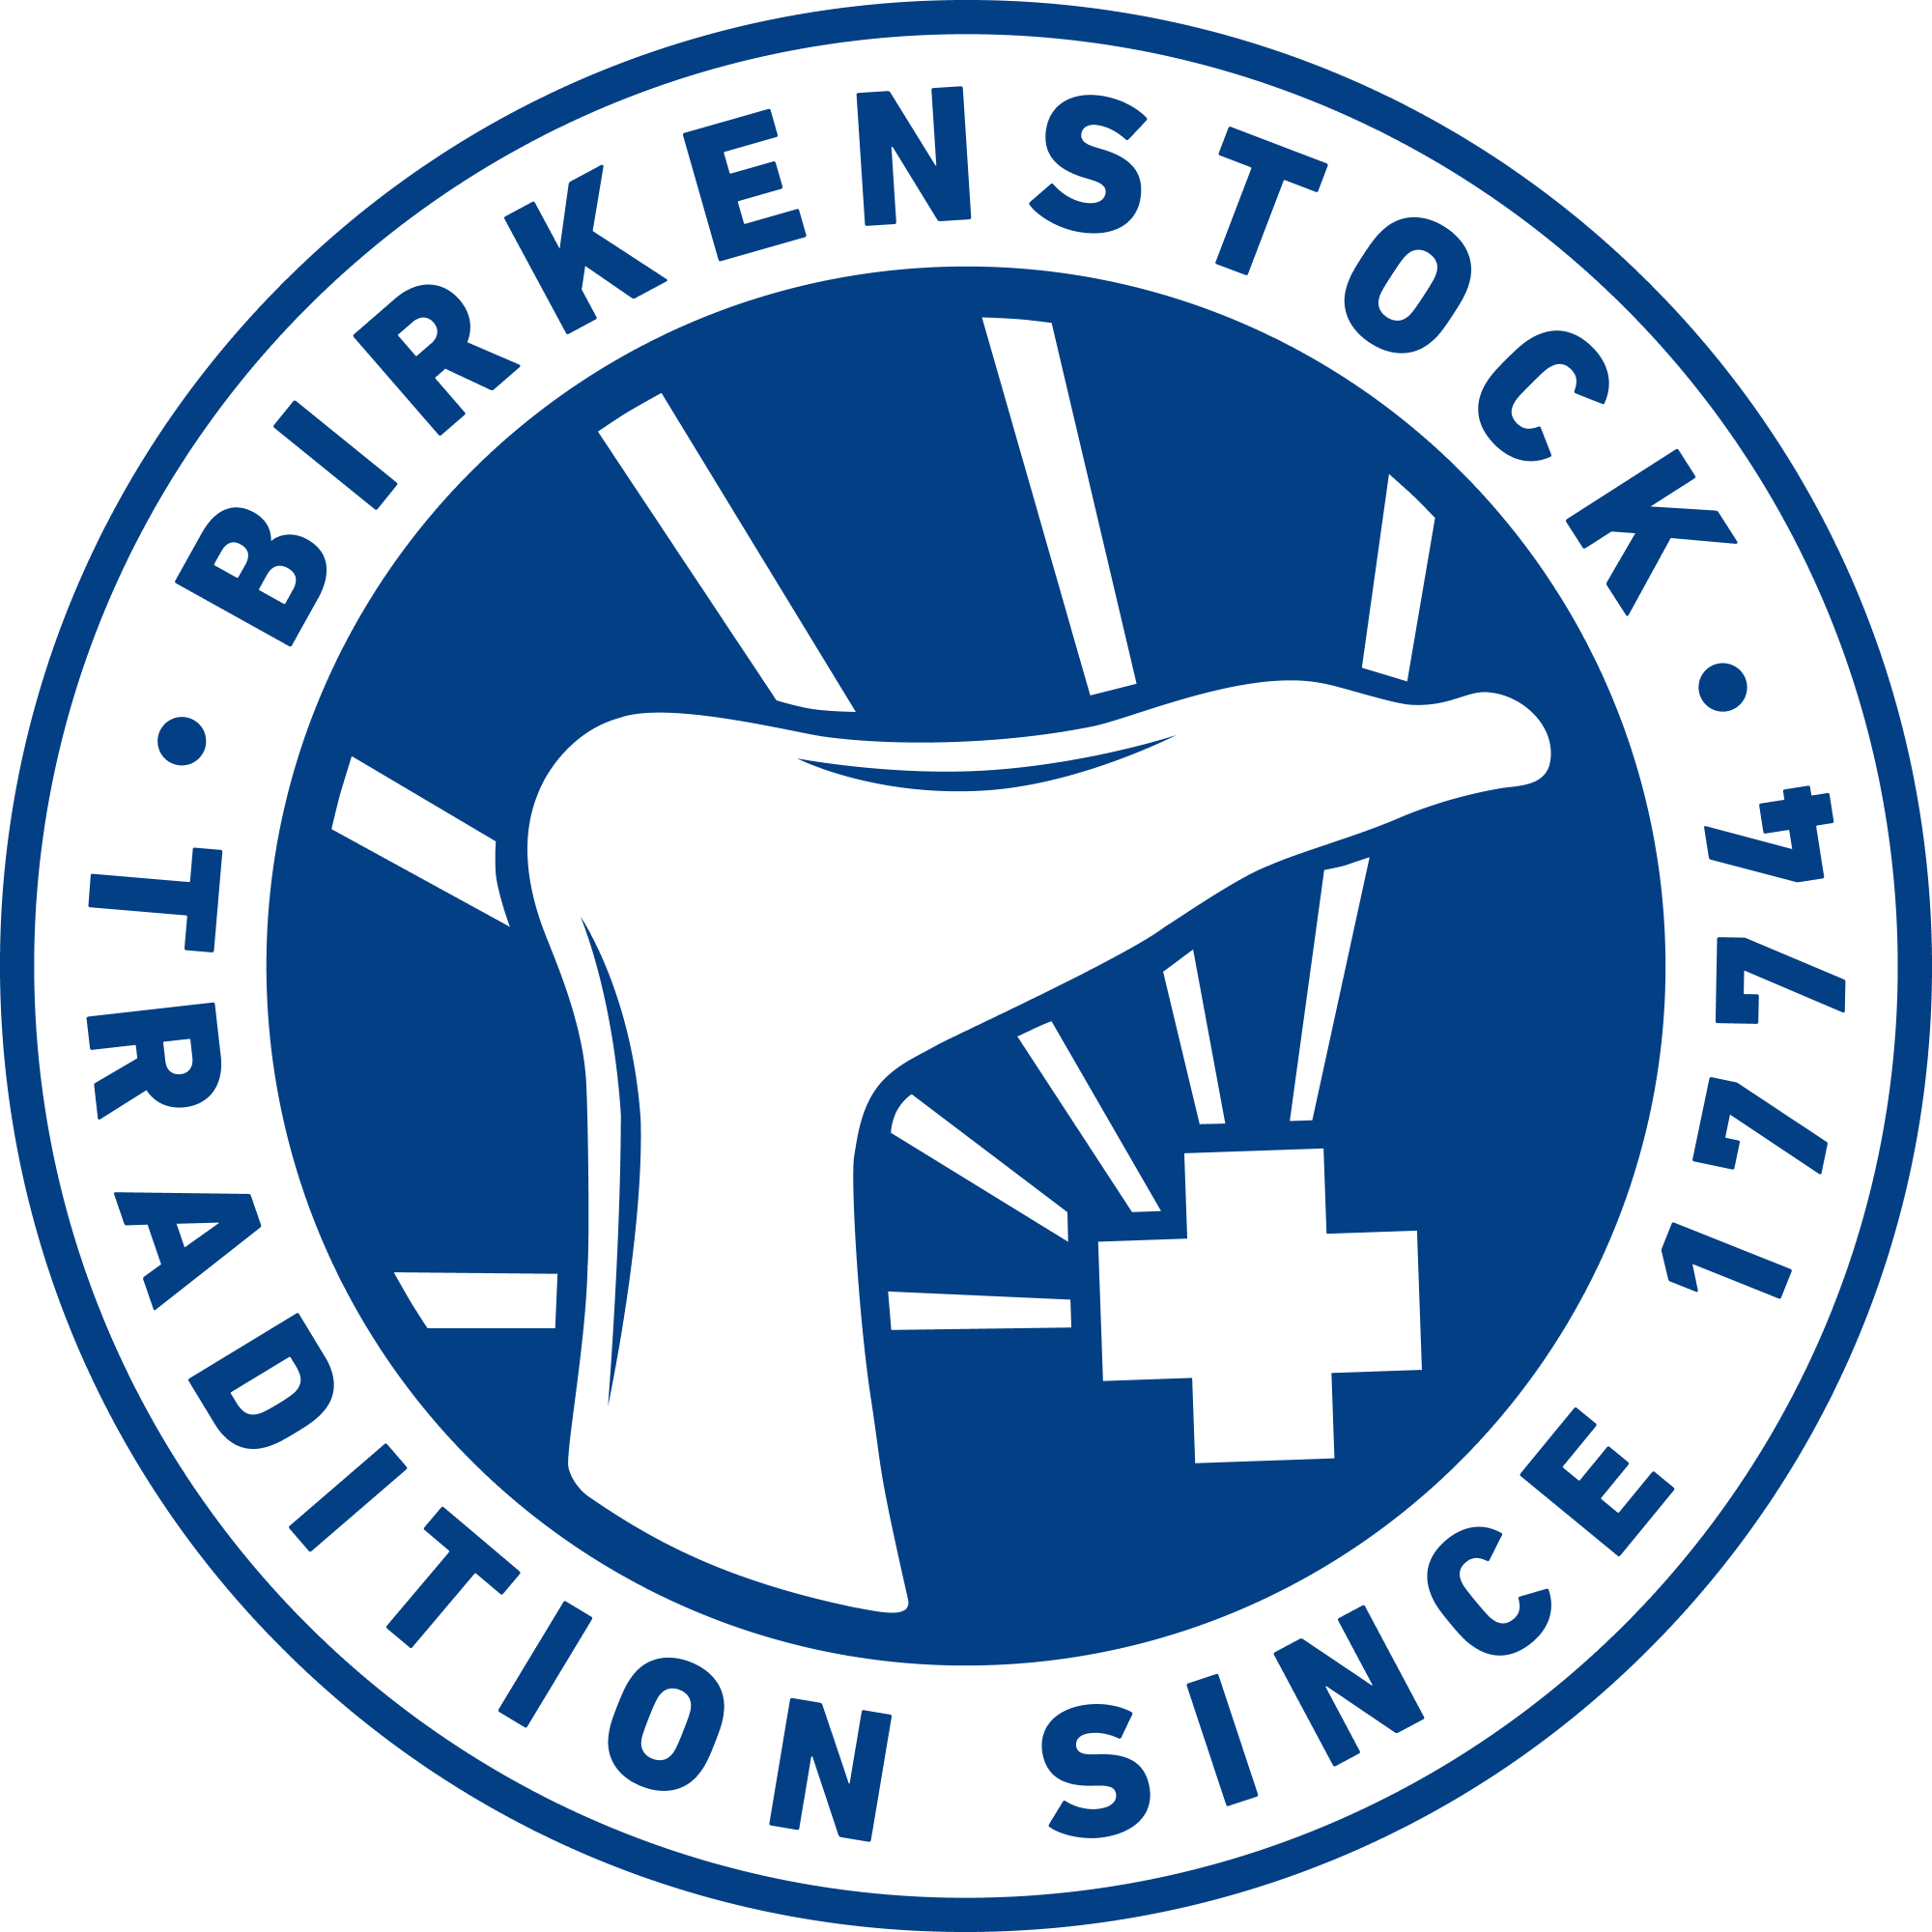 birkenstock-seal-blue.png